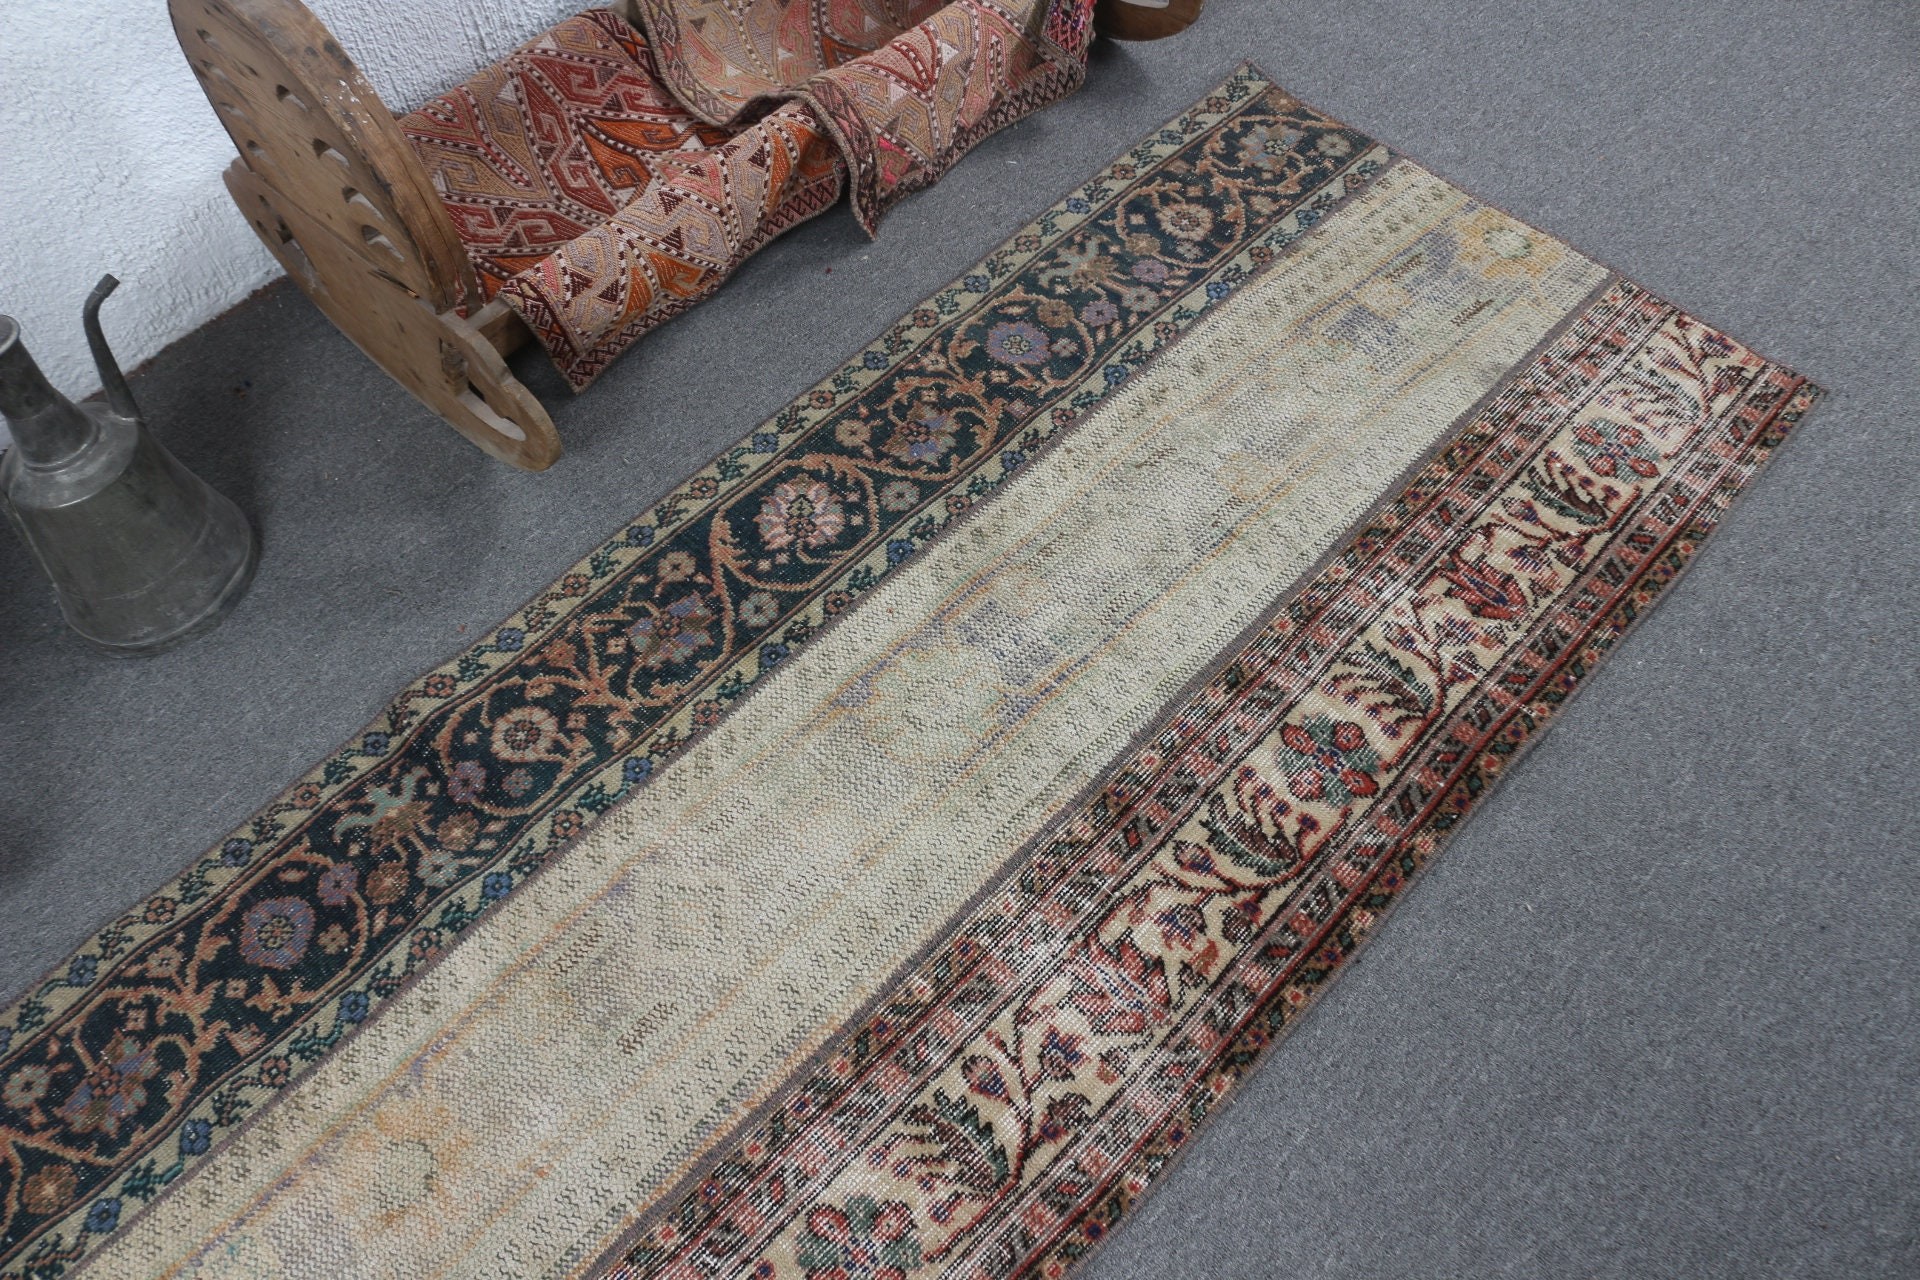 Turkish Rugs, Vintage Rug, Rugs for Stair, Stair Rug, Oriental Rug, Kitchen Rug, Beige  2.7x8.5 ft Runner Rug, Antique Rugs